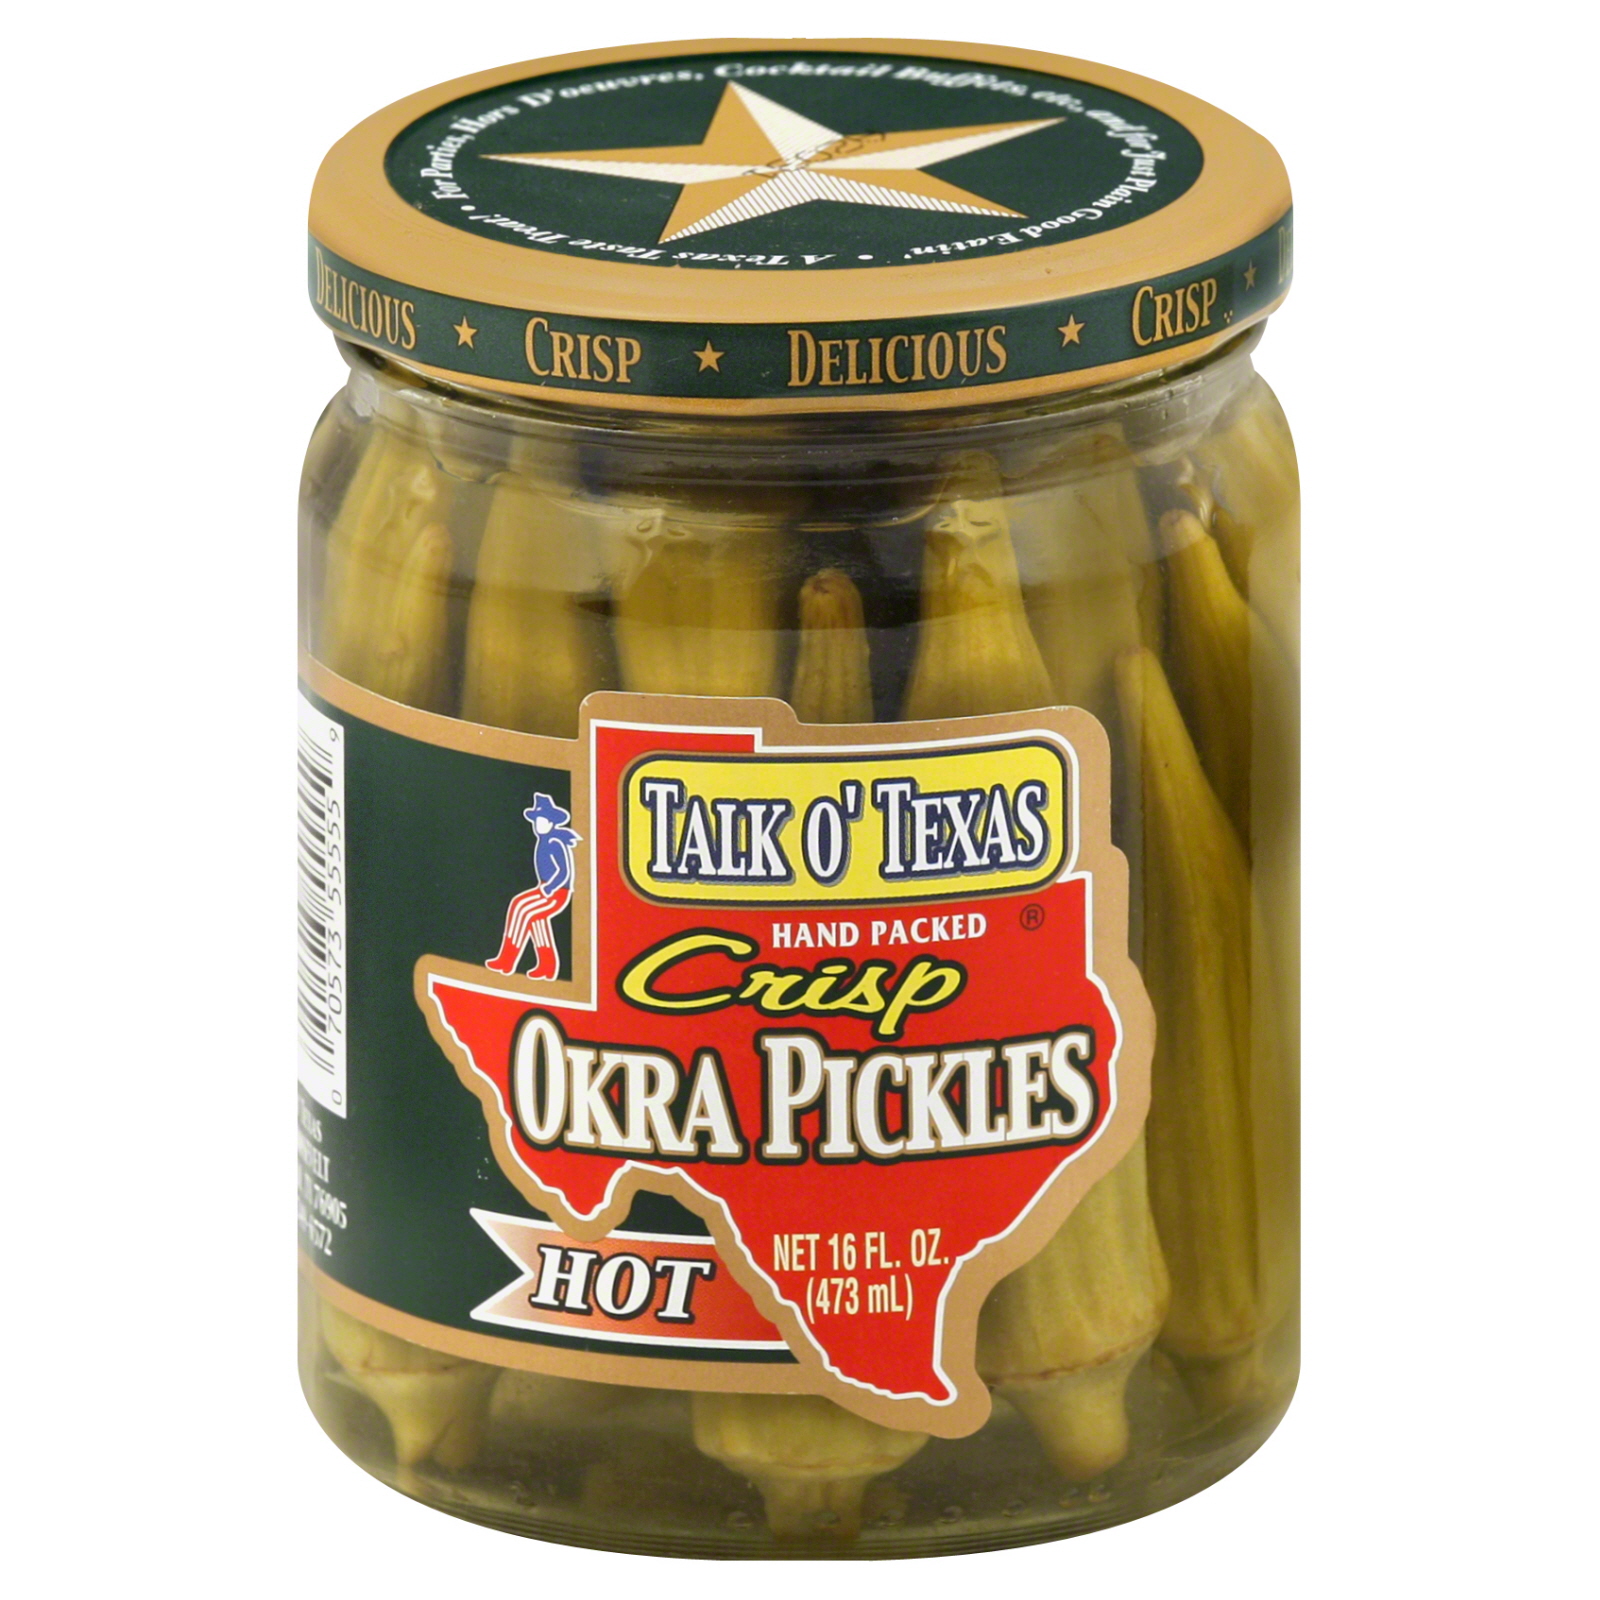 Talk O' Texas Crisp Okra Pickles, Hot, 16 fl oz (473 ml)